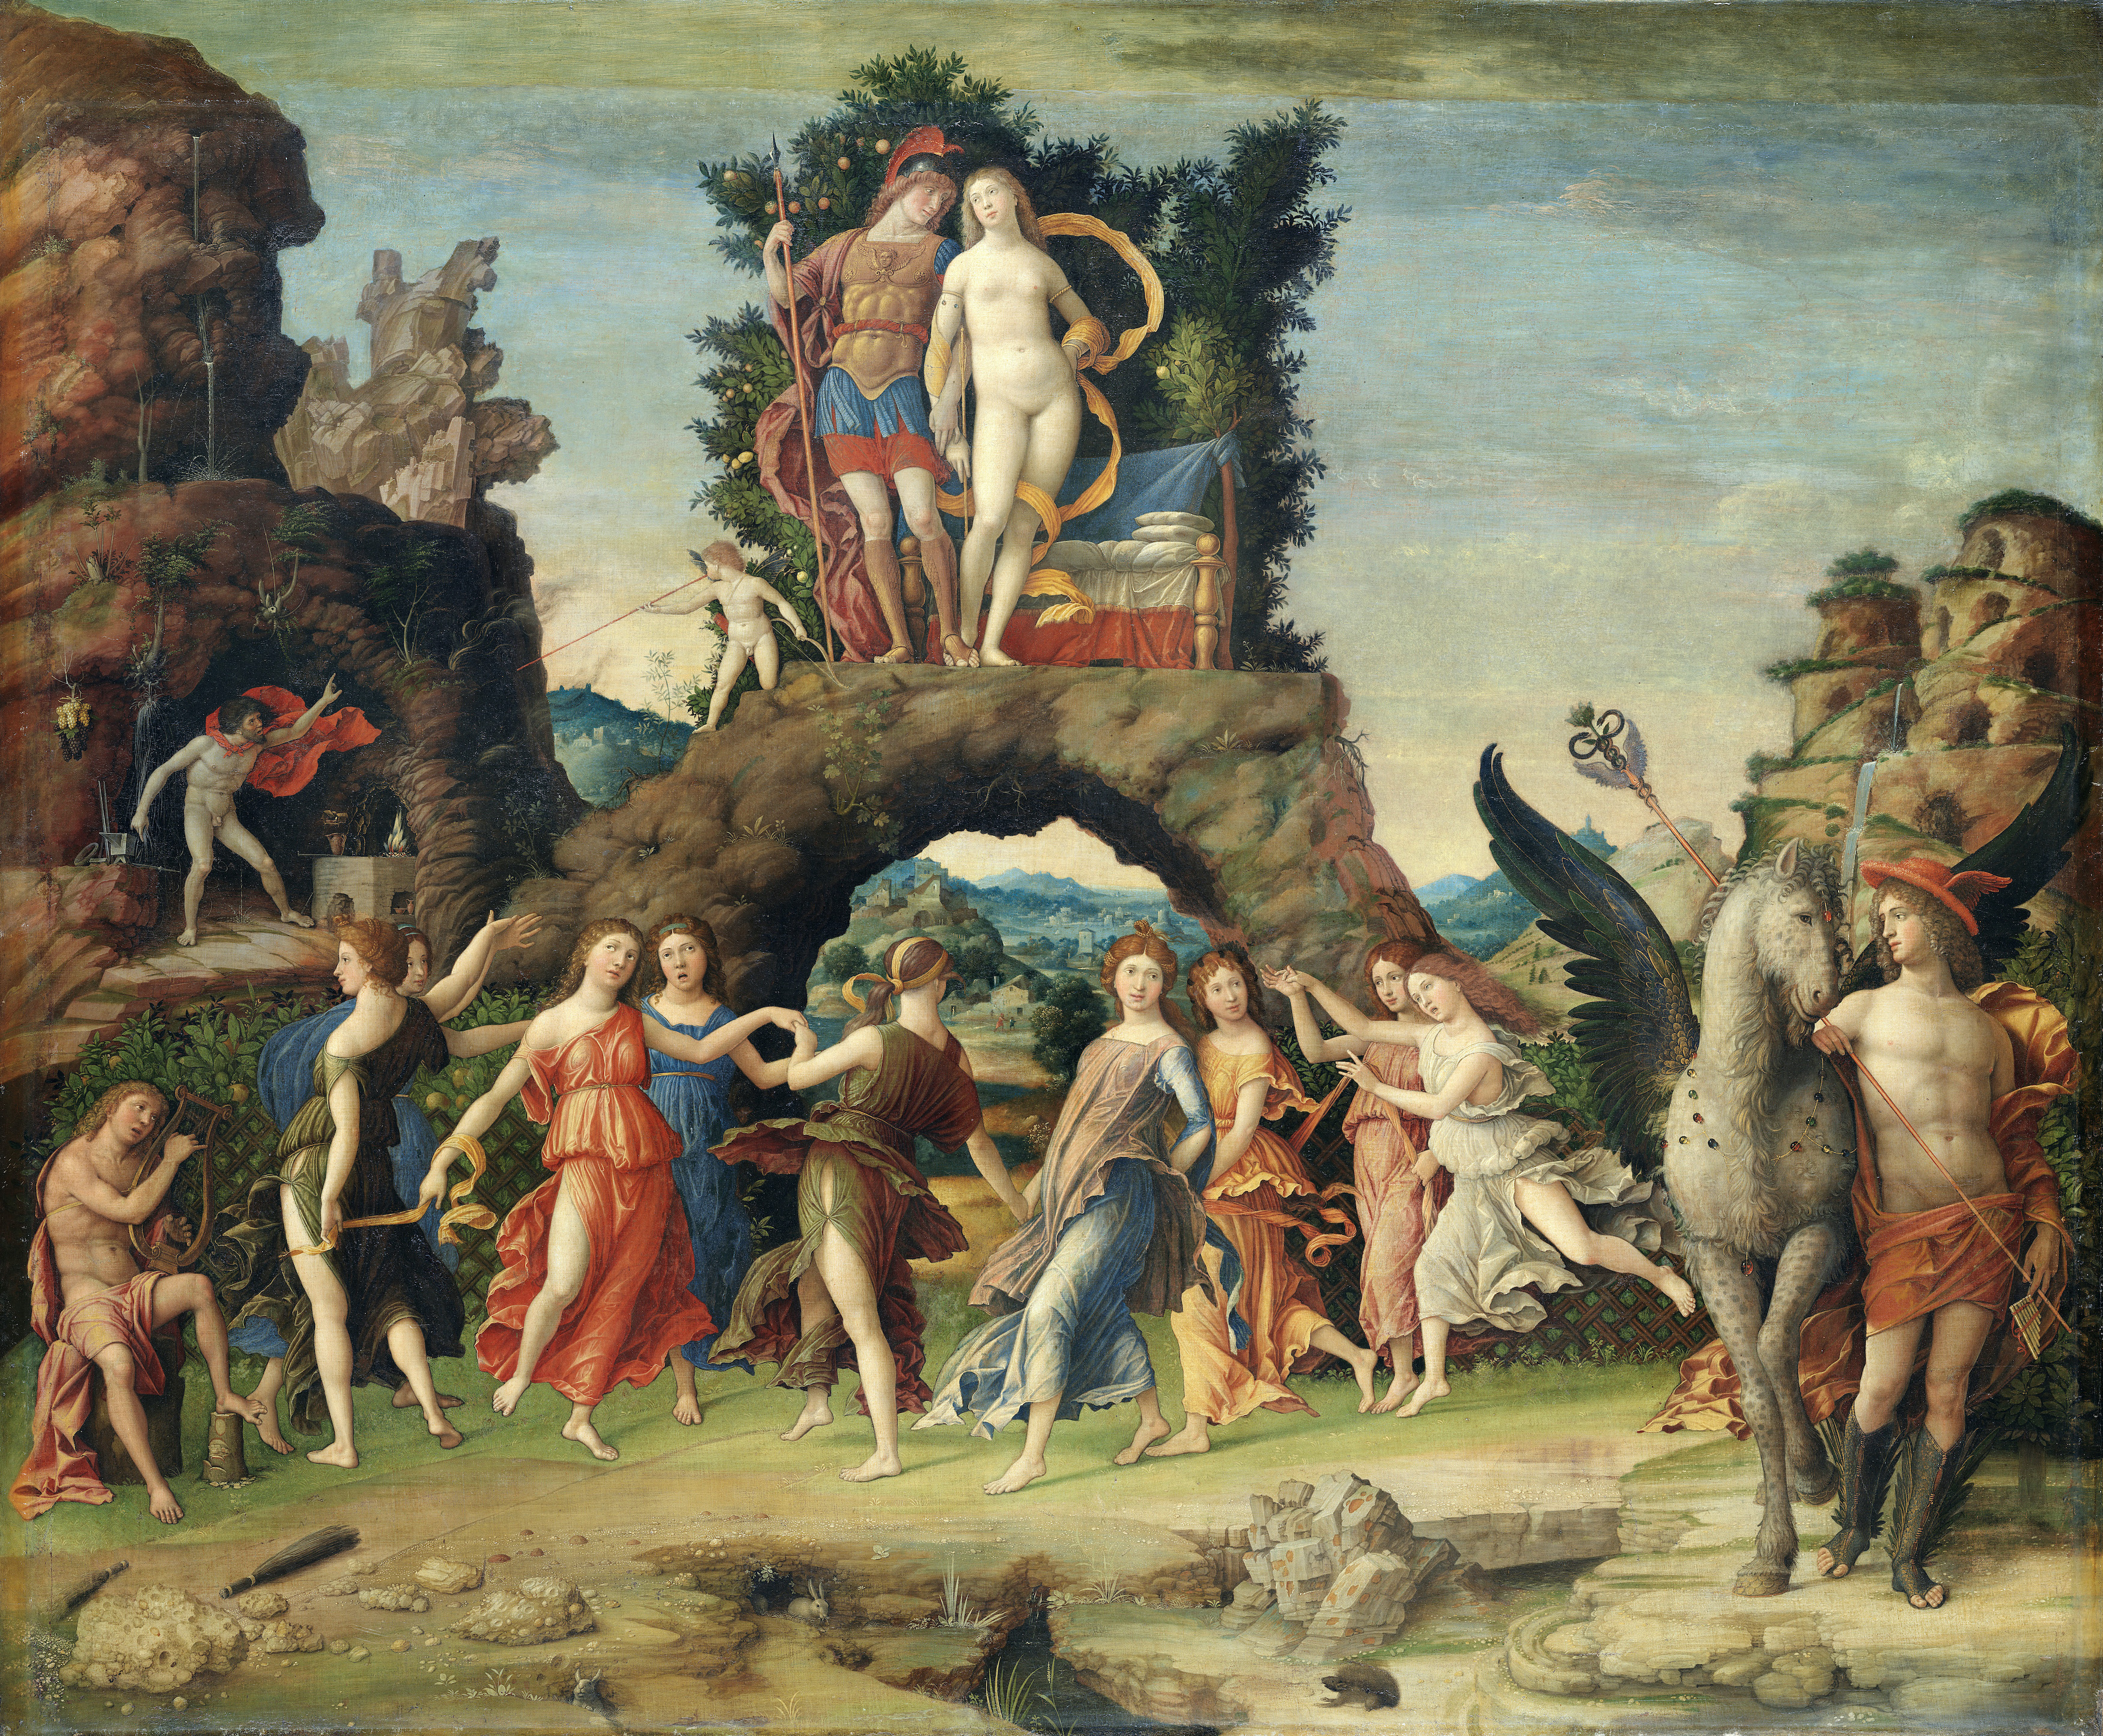 帕納塞斯山 by Andrea Mantegna - 1497 年 - 159 × 192 公分 